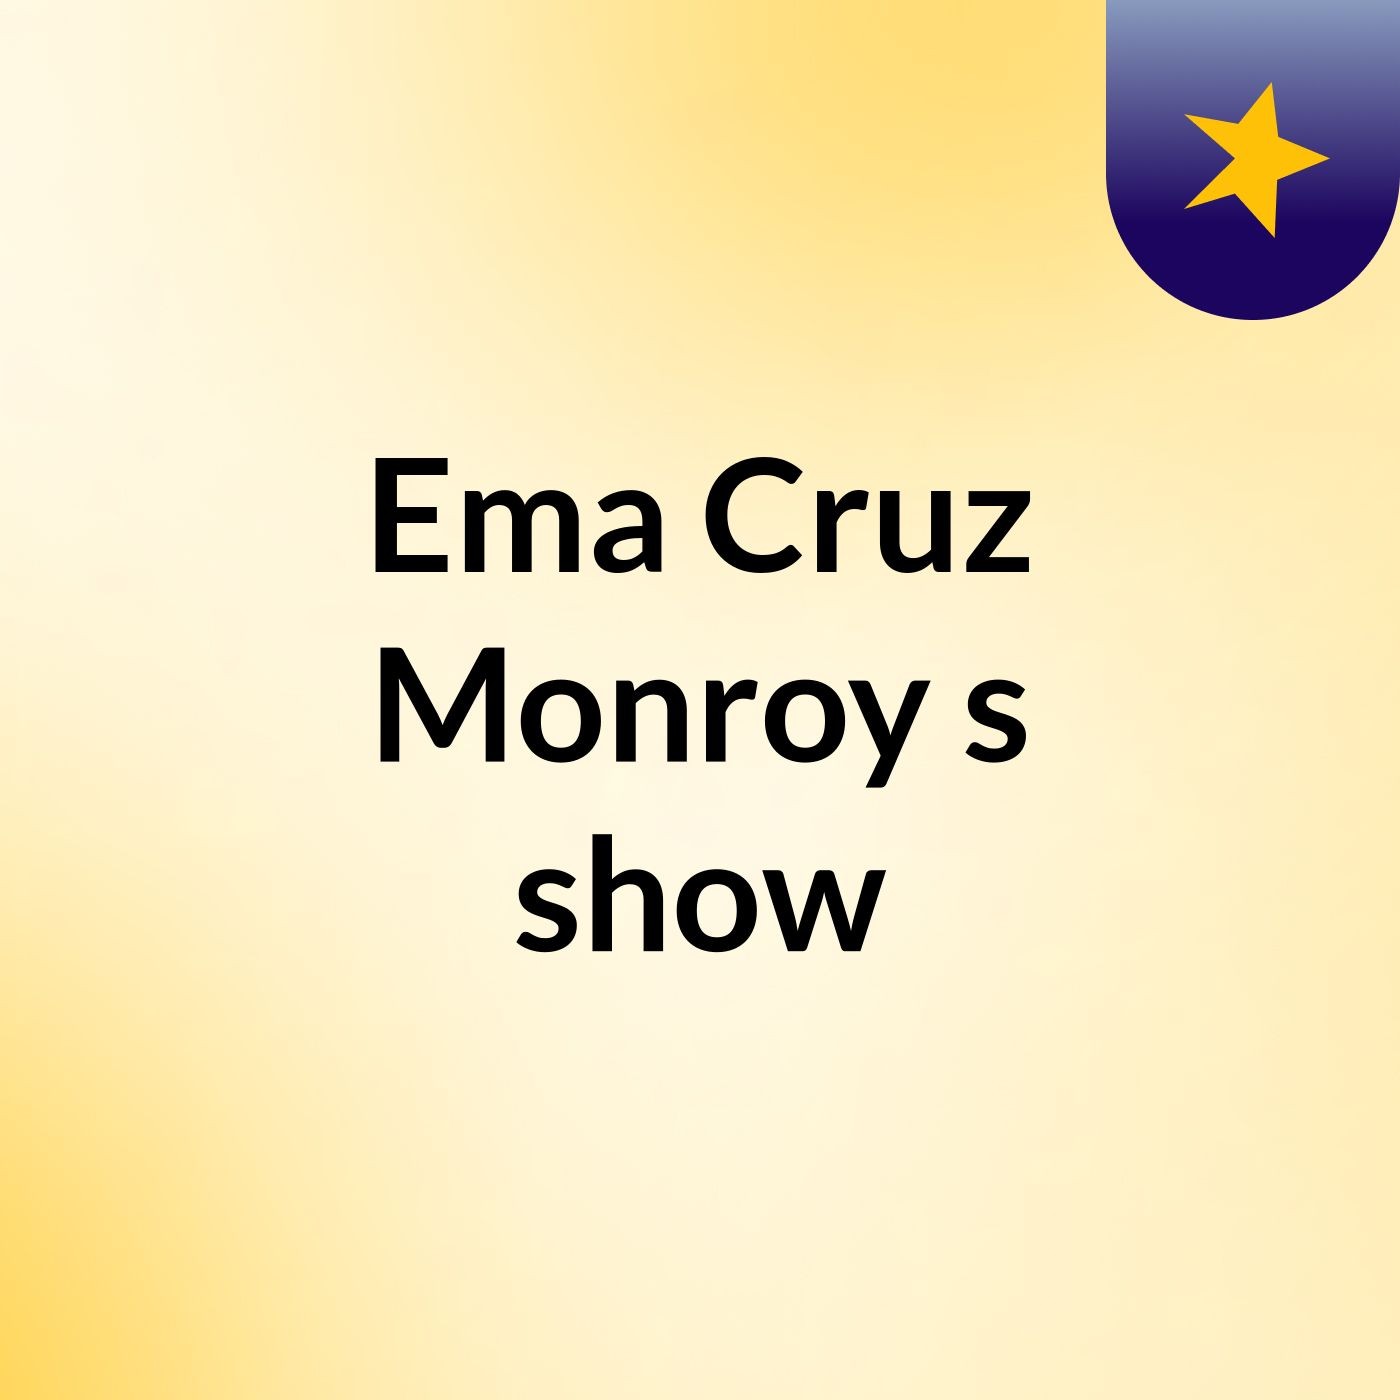 Ema Cruz Monroy's show